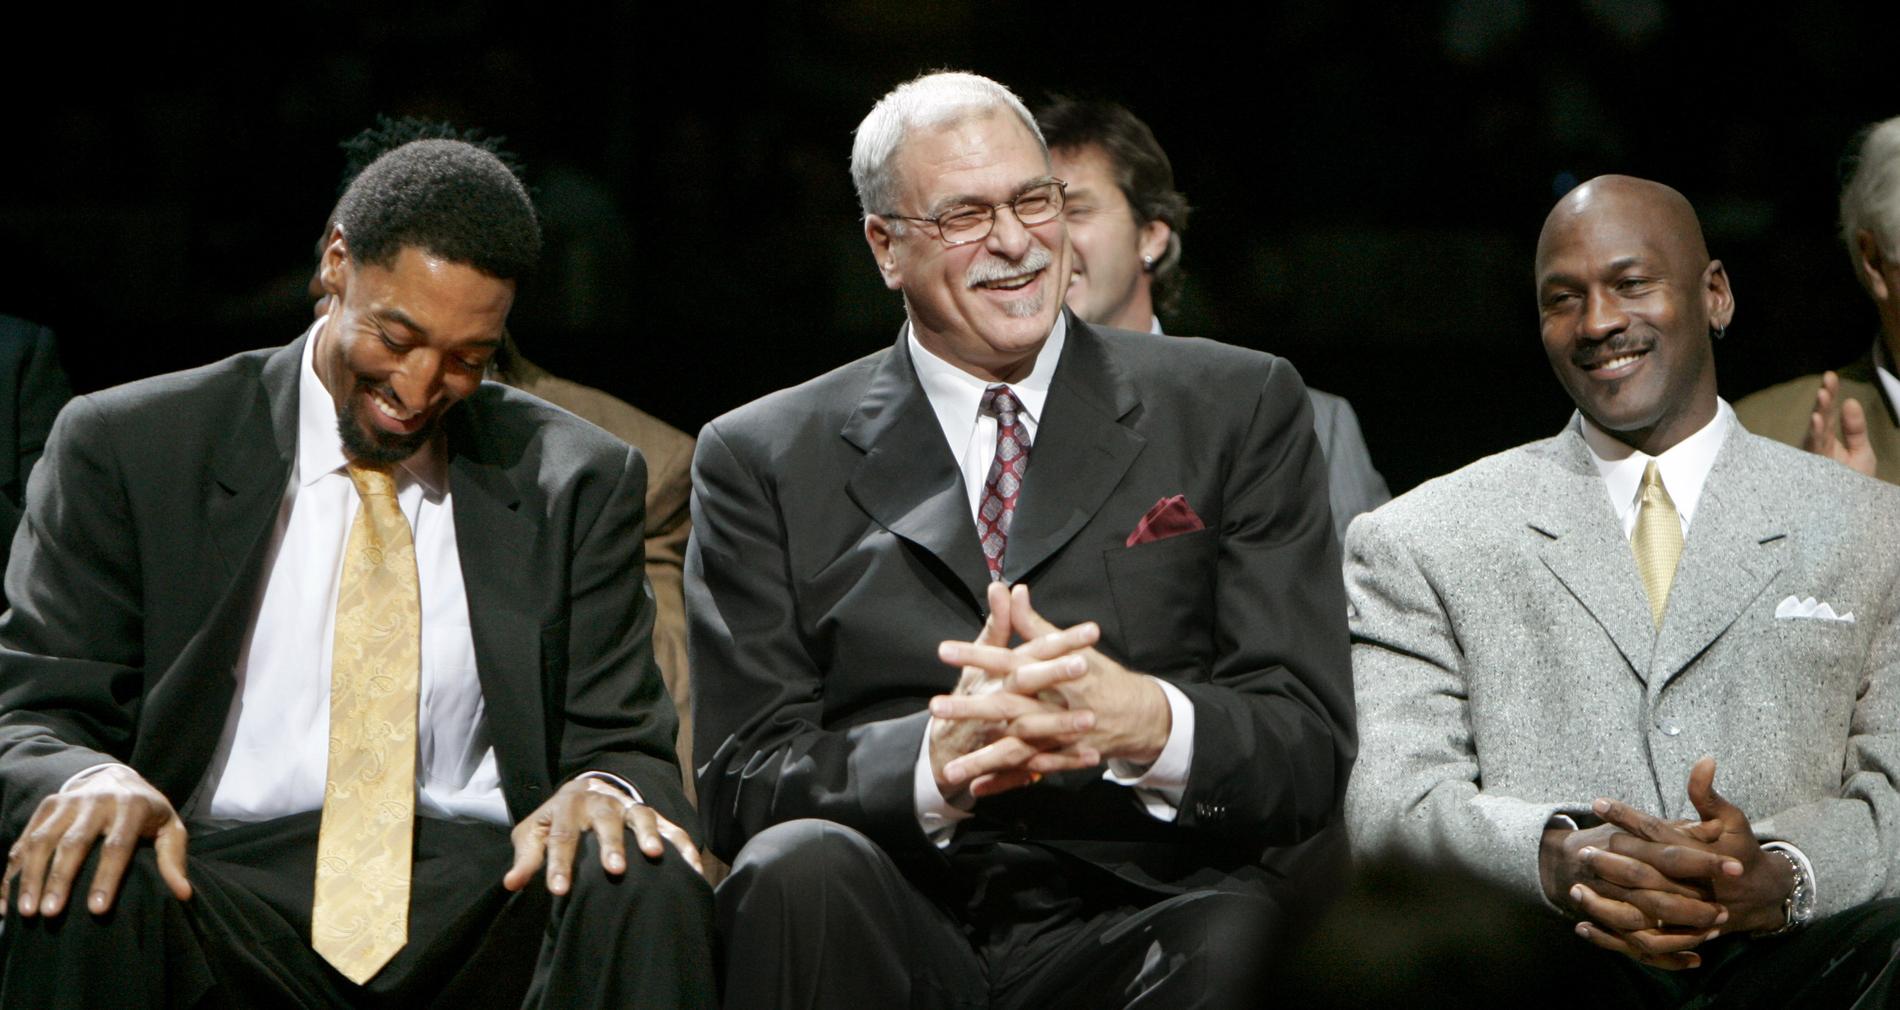 Legendariske NBA-tränaren Phil Jackson (mitten) ledde med stjärnspelare som Scottie Pippen (vänster) och Michael Jordan (höger) Chicago Bulls till enorma framgångar på 90-talet.